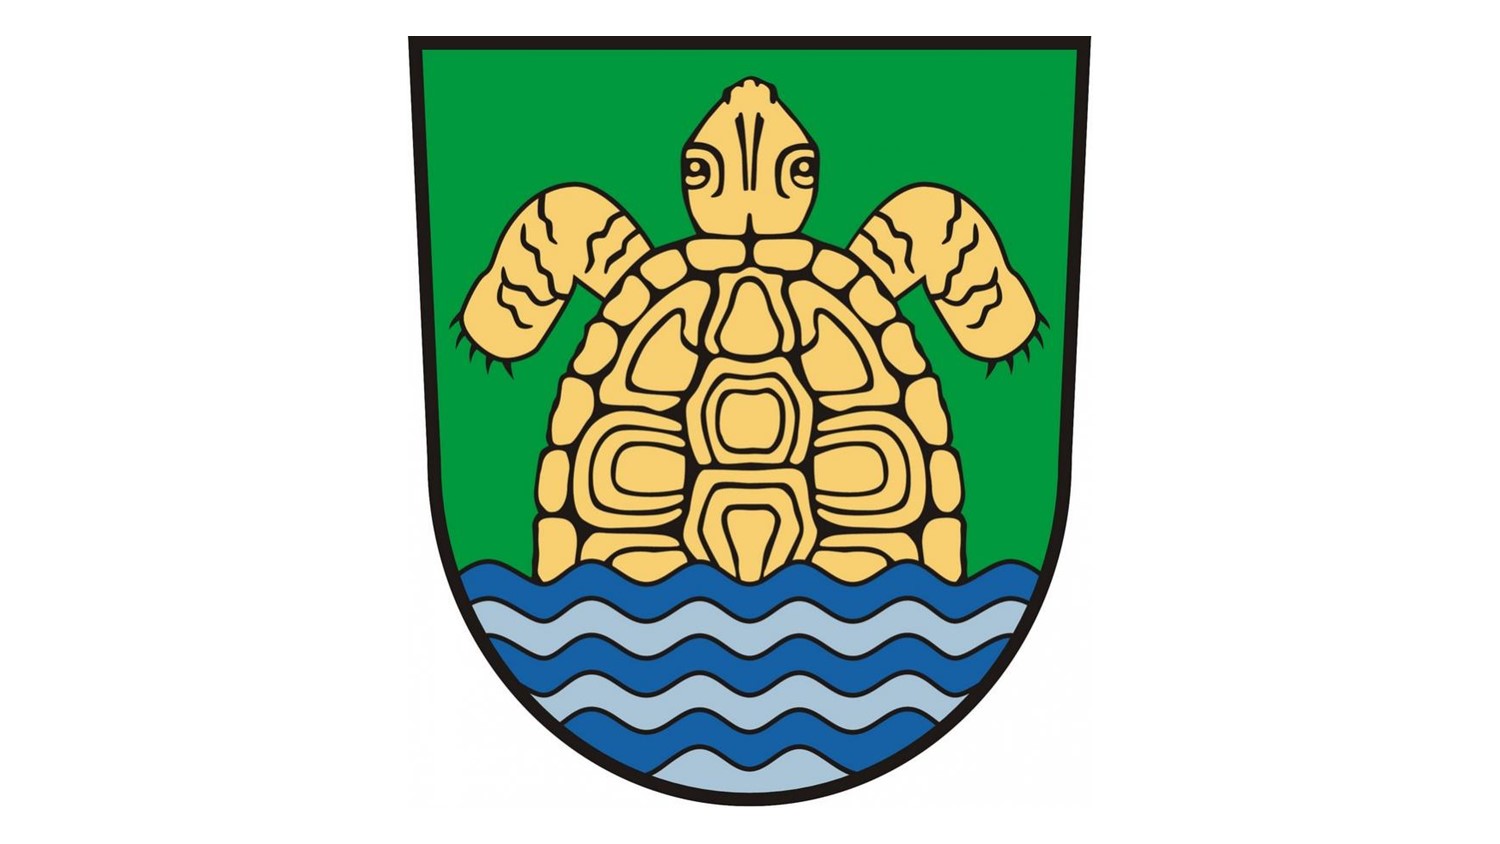 Wappen der Gemeinde Grünheide (Mark)